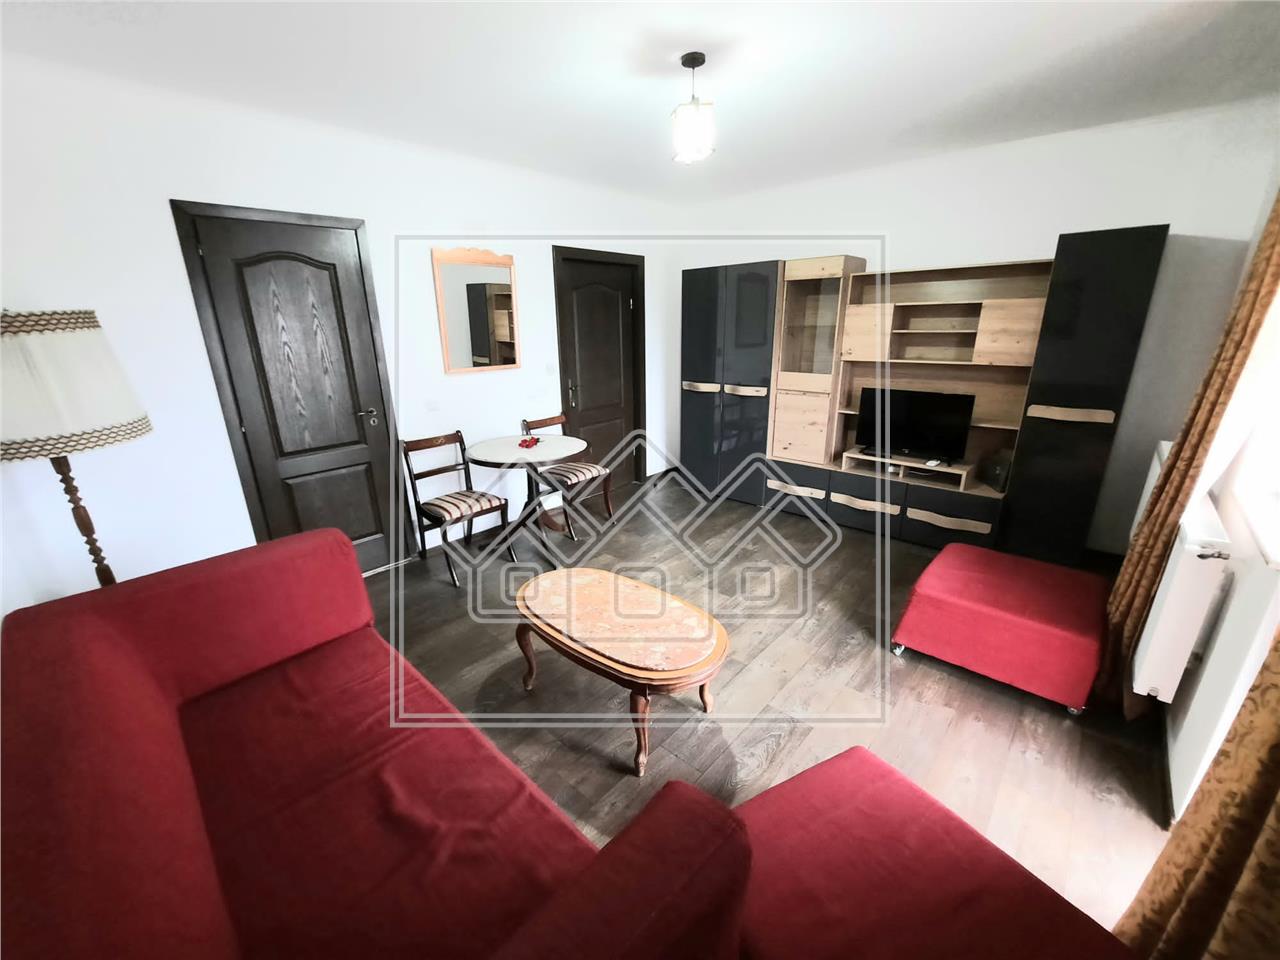 Apartament 2 rooms for rent in Alba Iulia